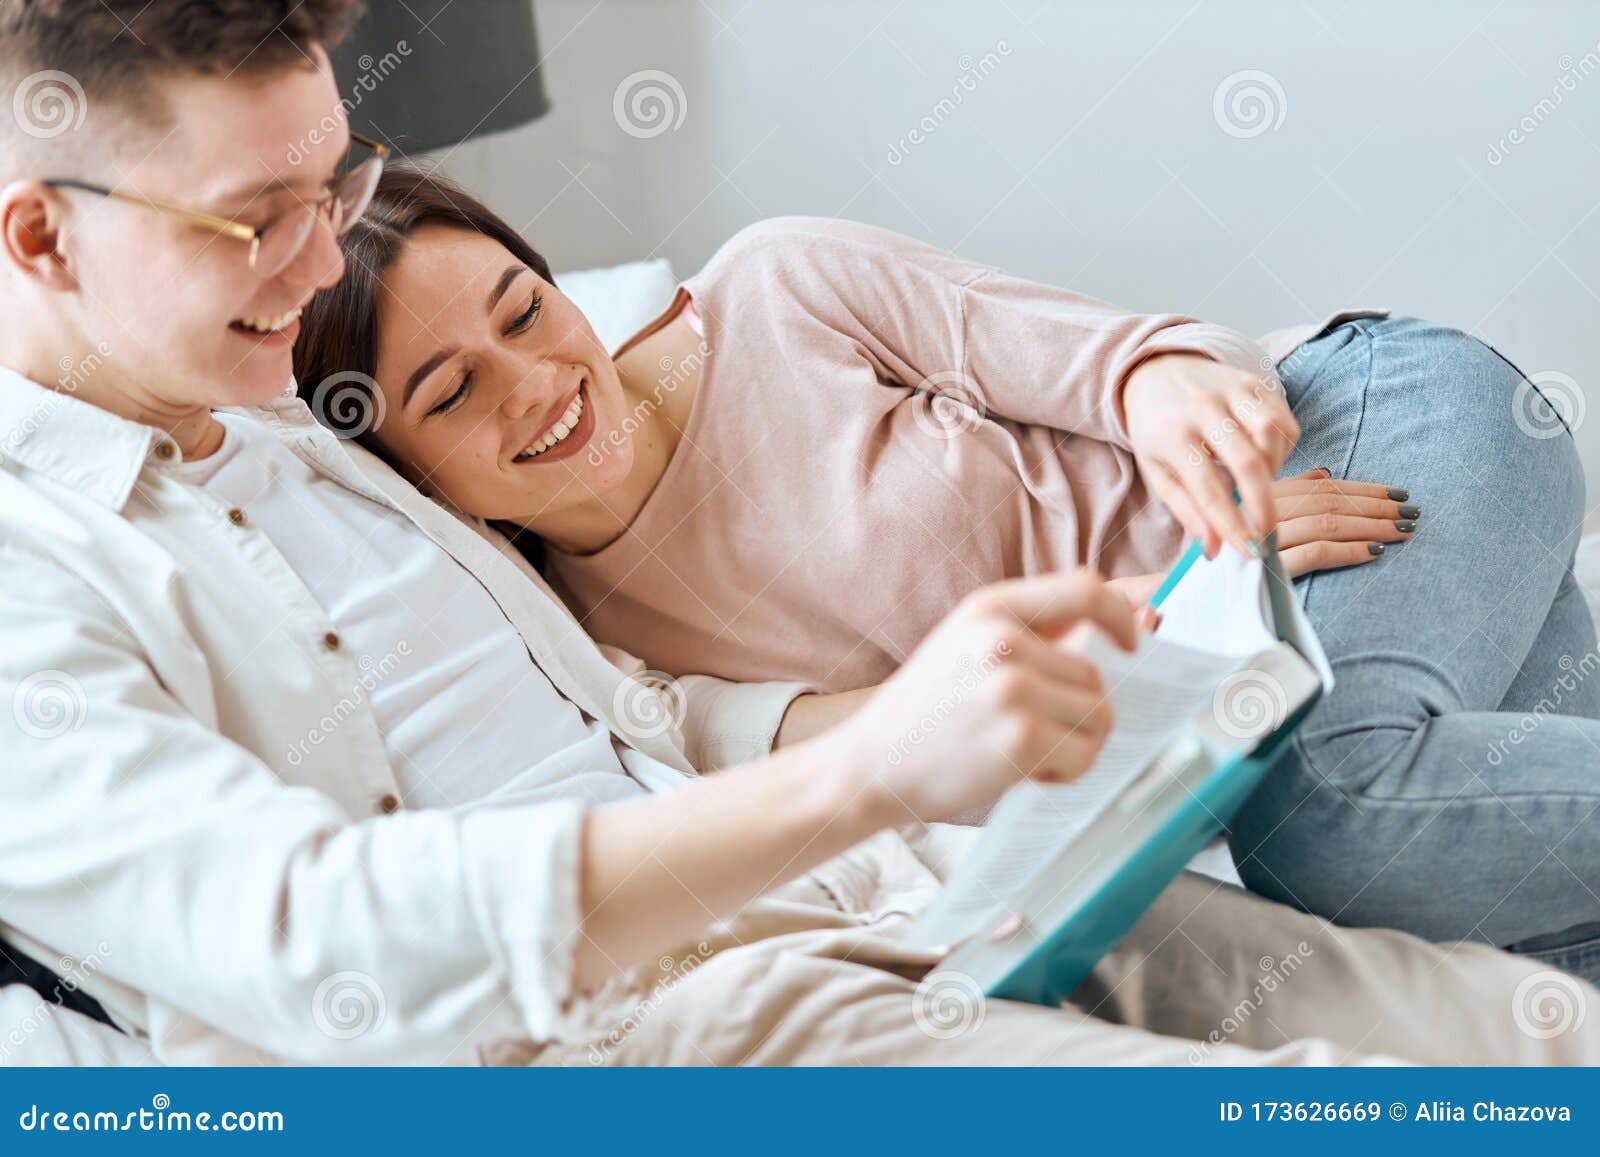 Joven Y Mujer Con Ropa Informal Descansando En El Dormitorio Imagen de archivo - Imagen hombres, gente: 173626669